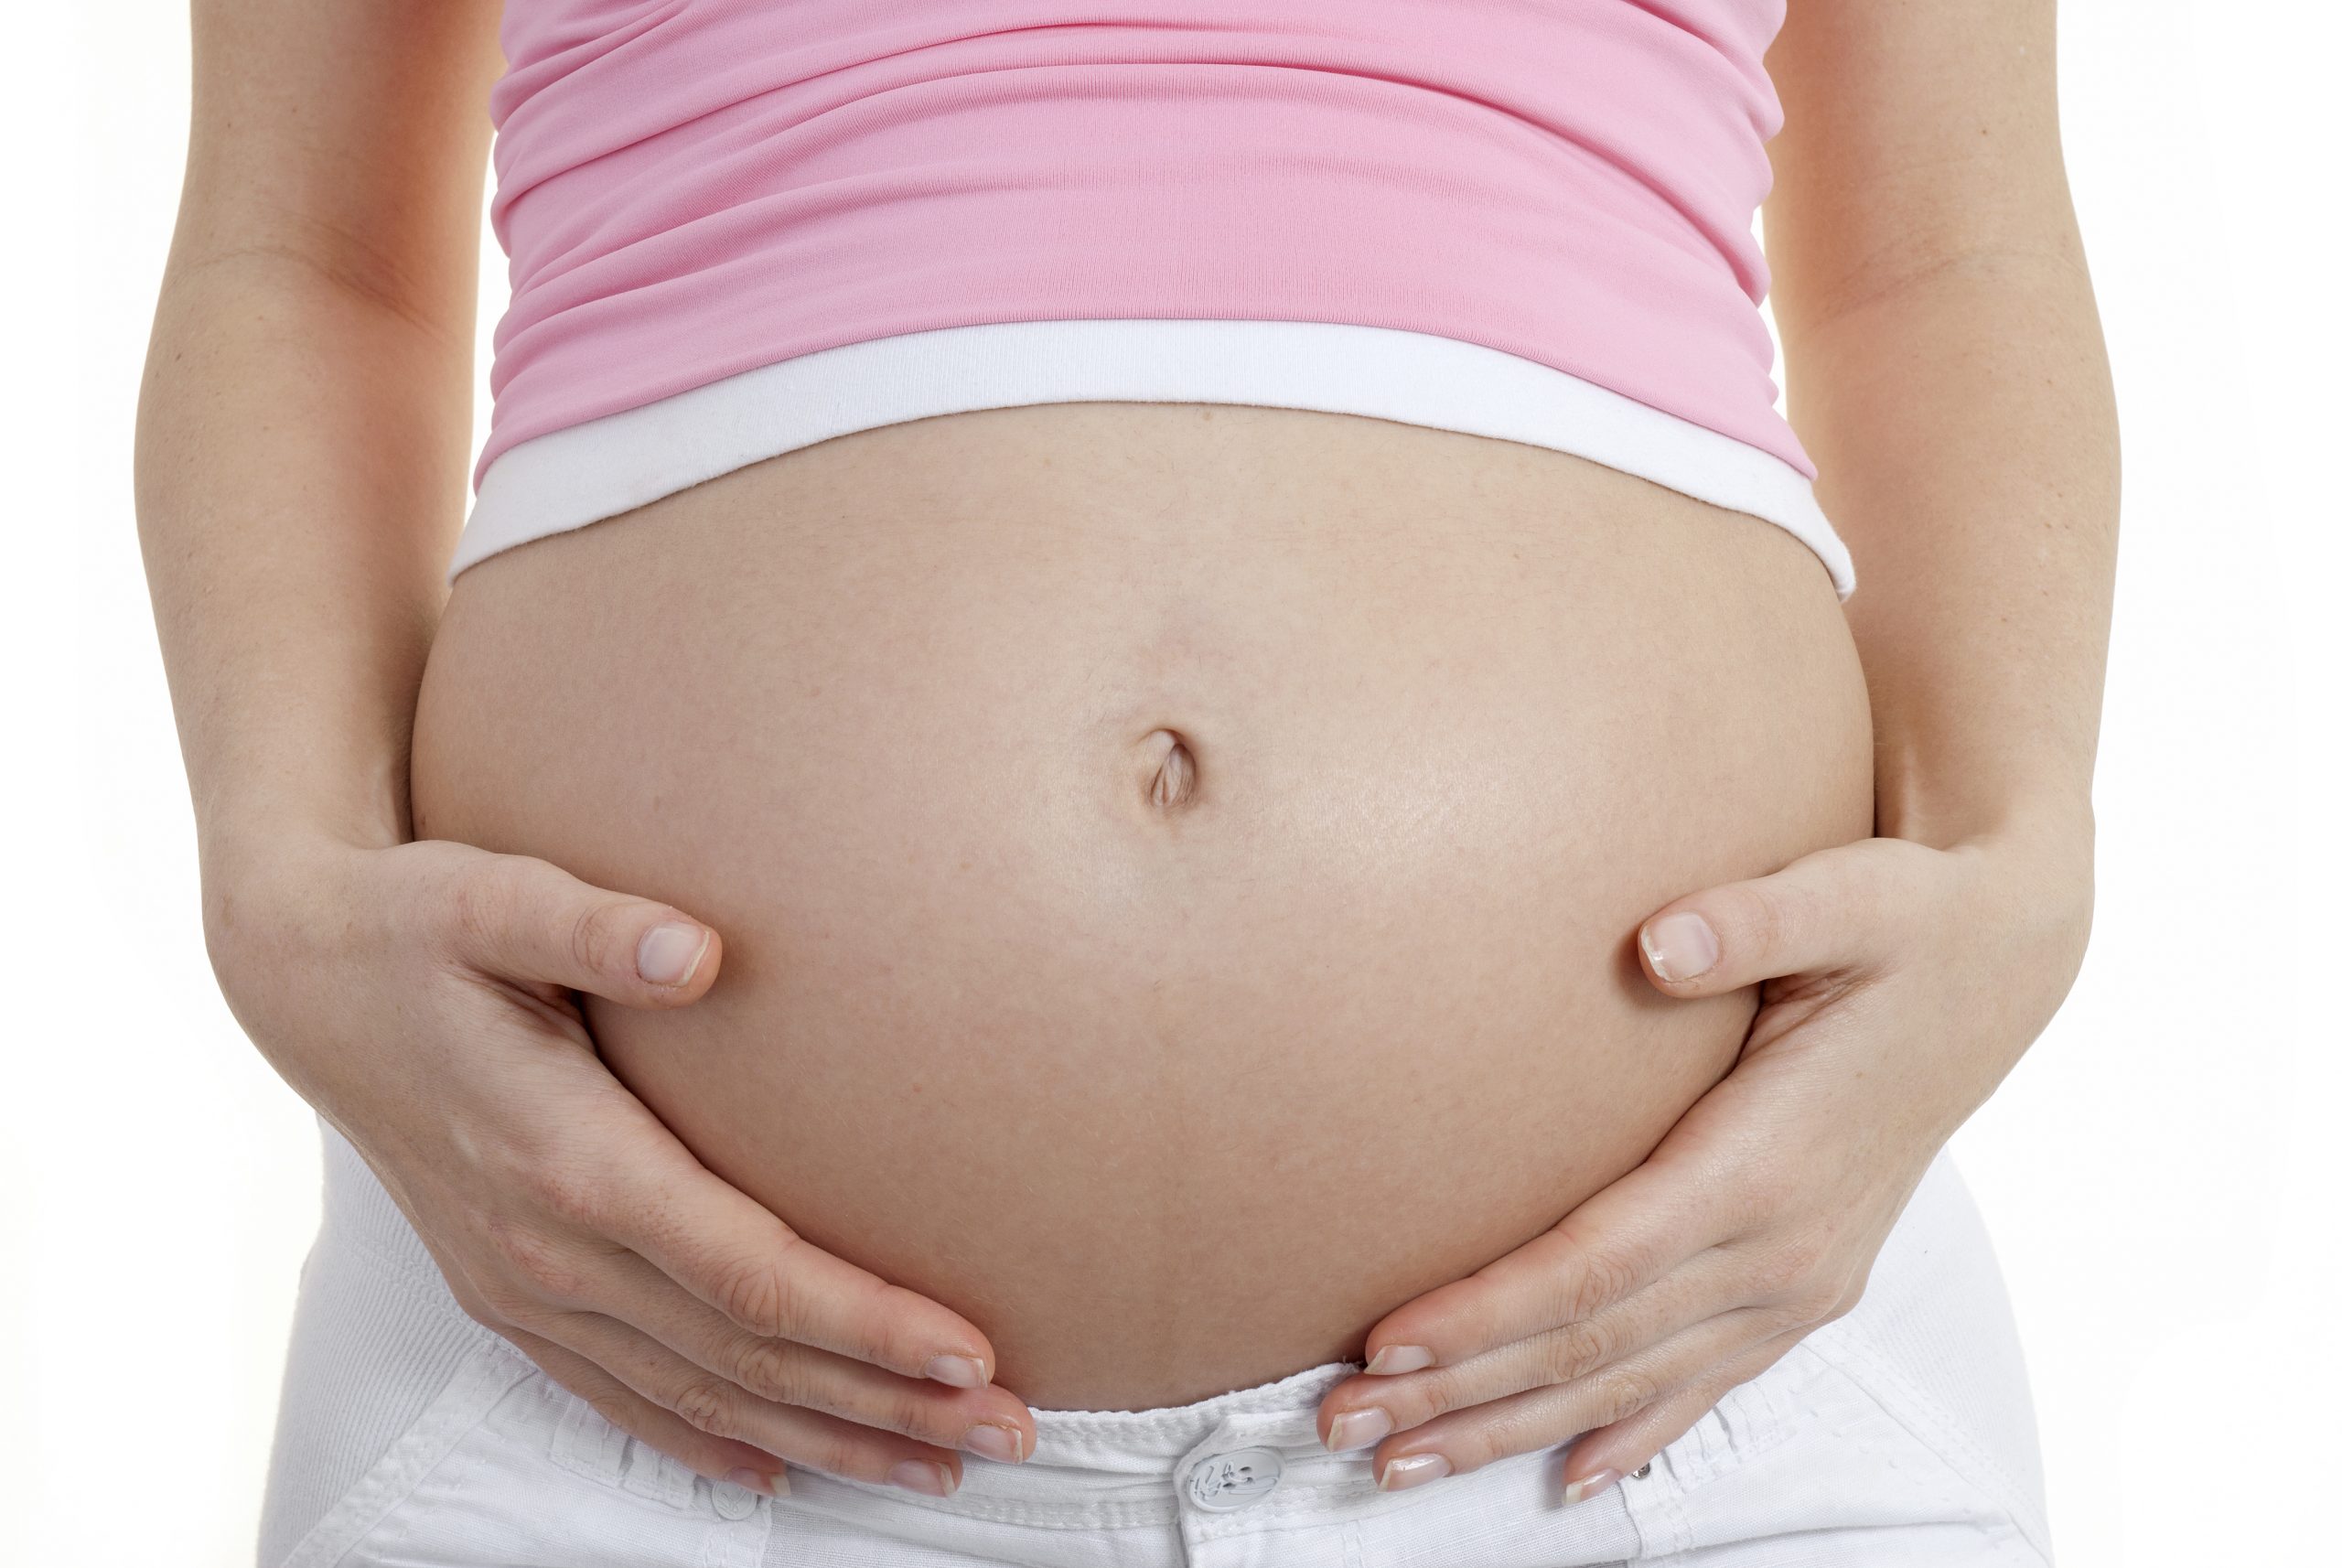 Prurito in gravidanza: le cause e i rimedi utili